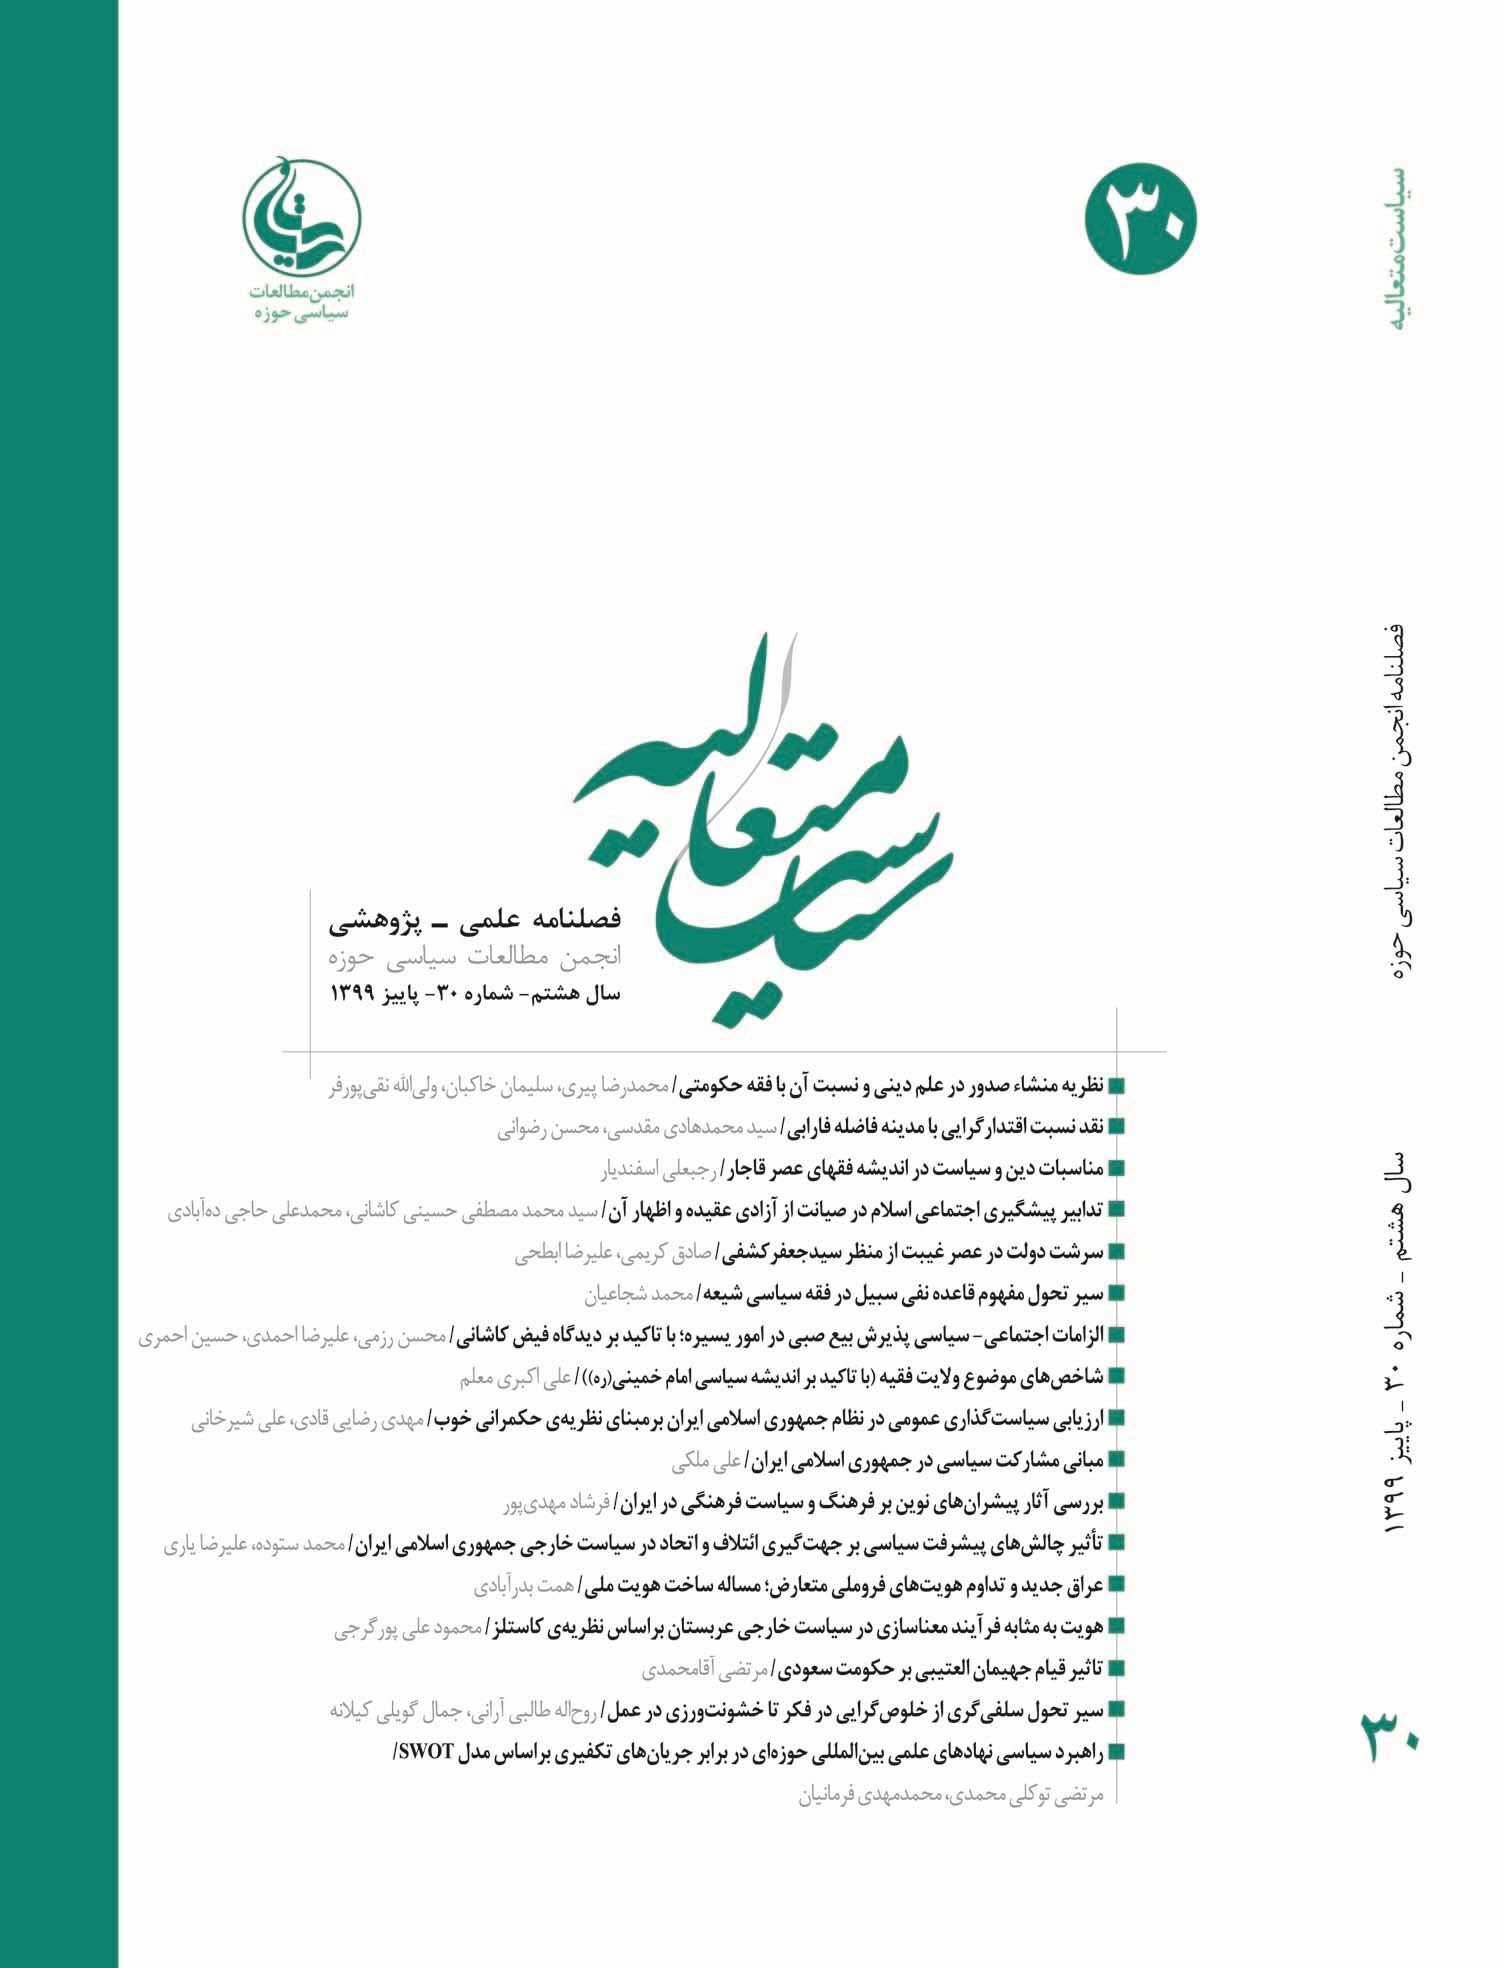 تبیین سیاست اخلاقی در نظام اسلامی در اندیشه سیاسی امام خمینی